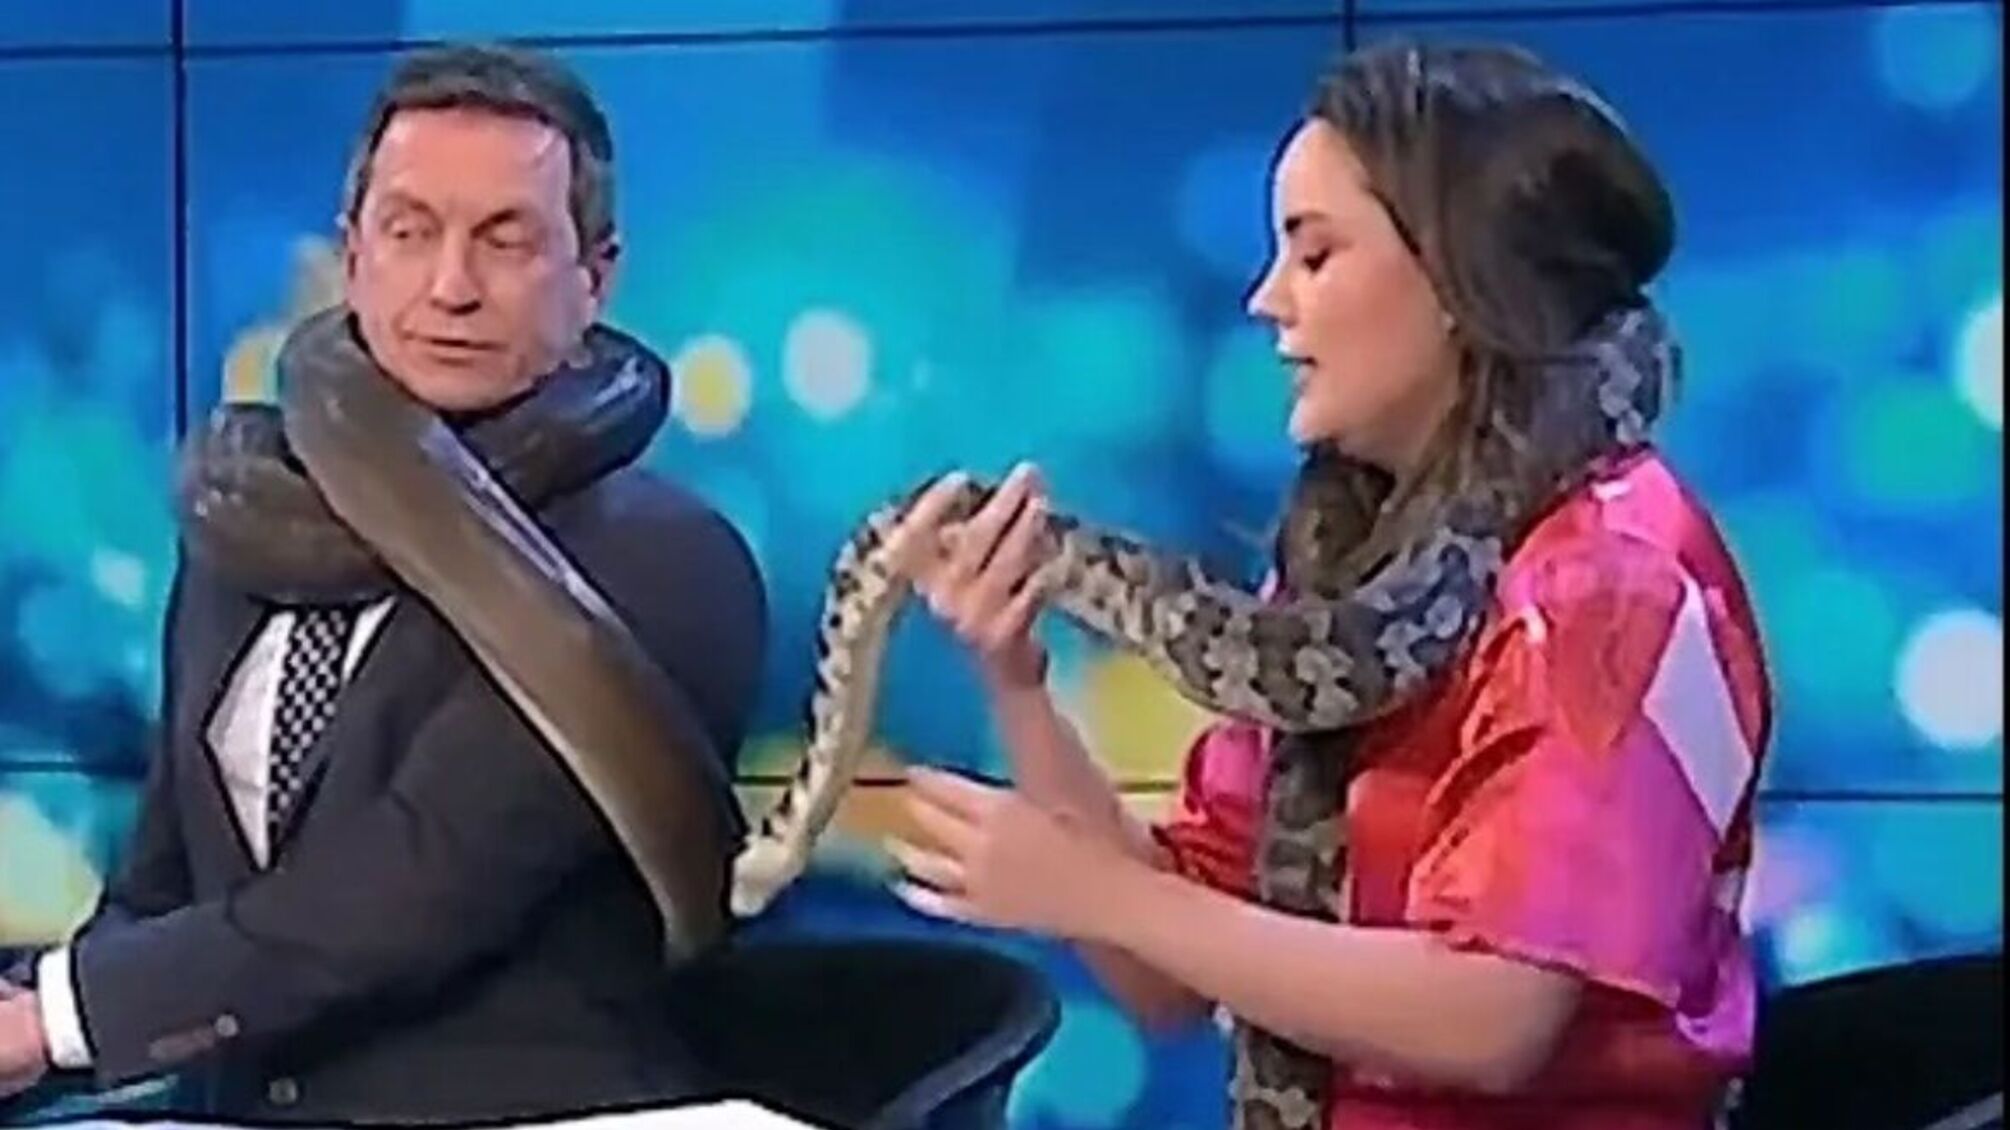 Змея чуть не задушила телезвезду Австралии в прямом эфире